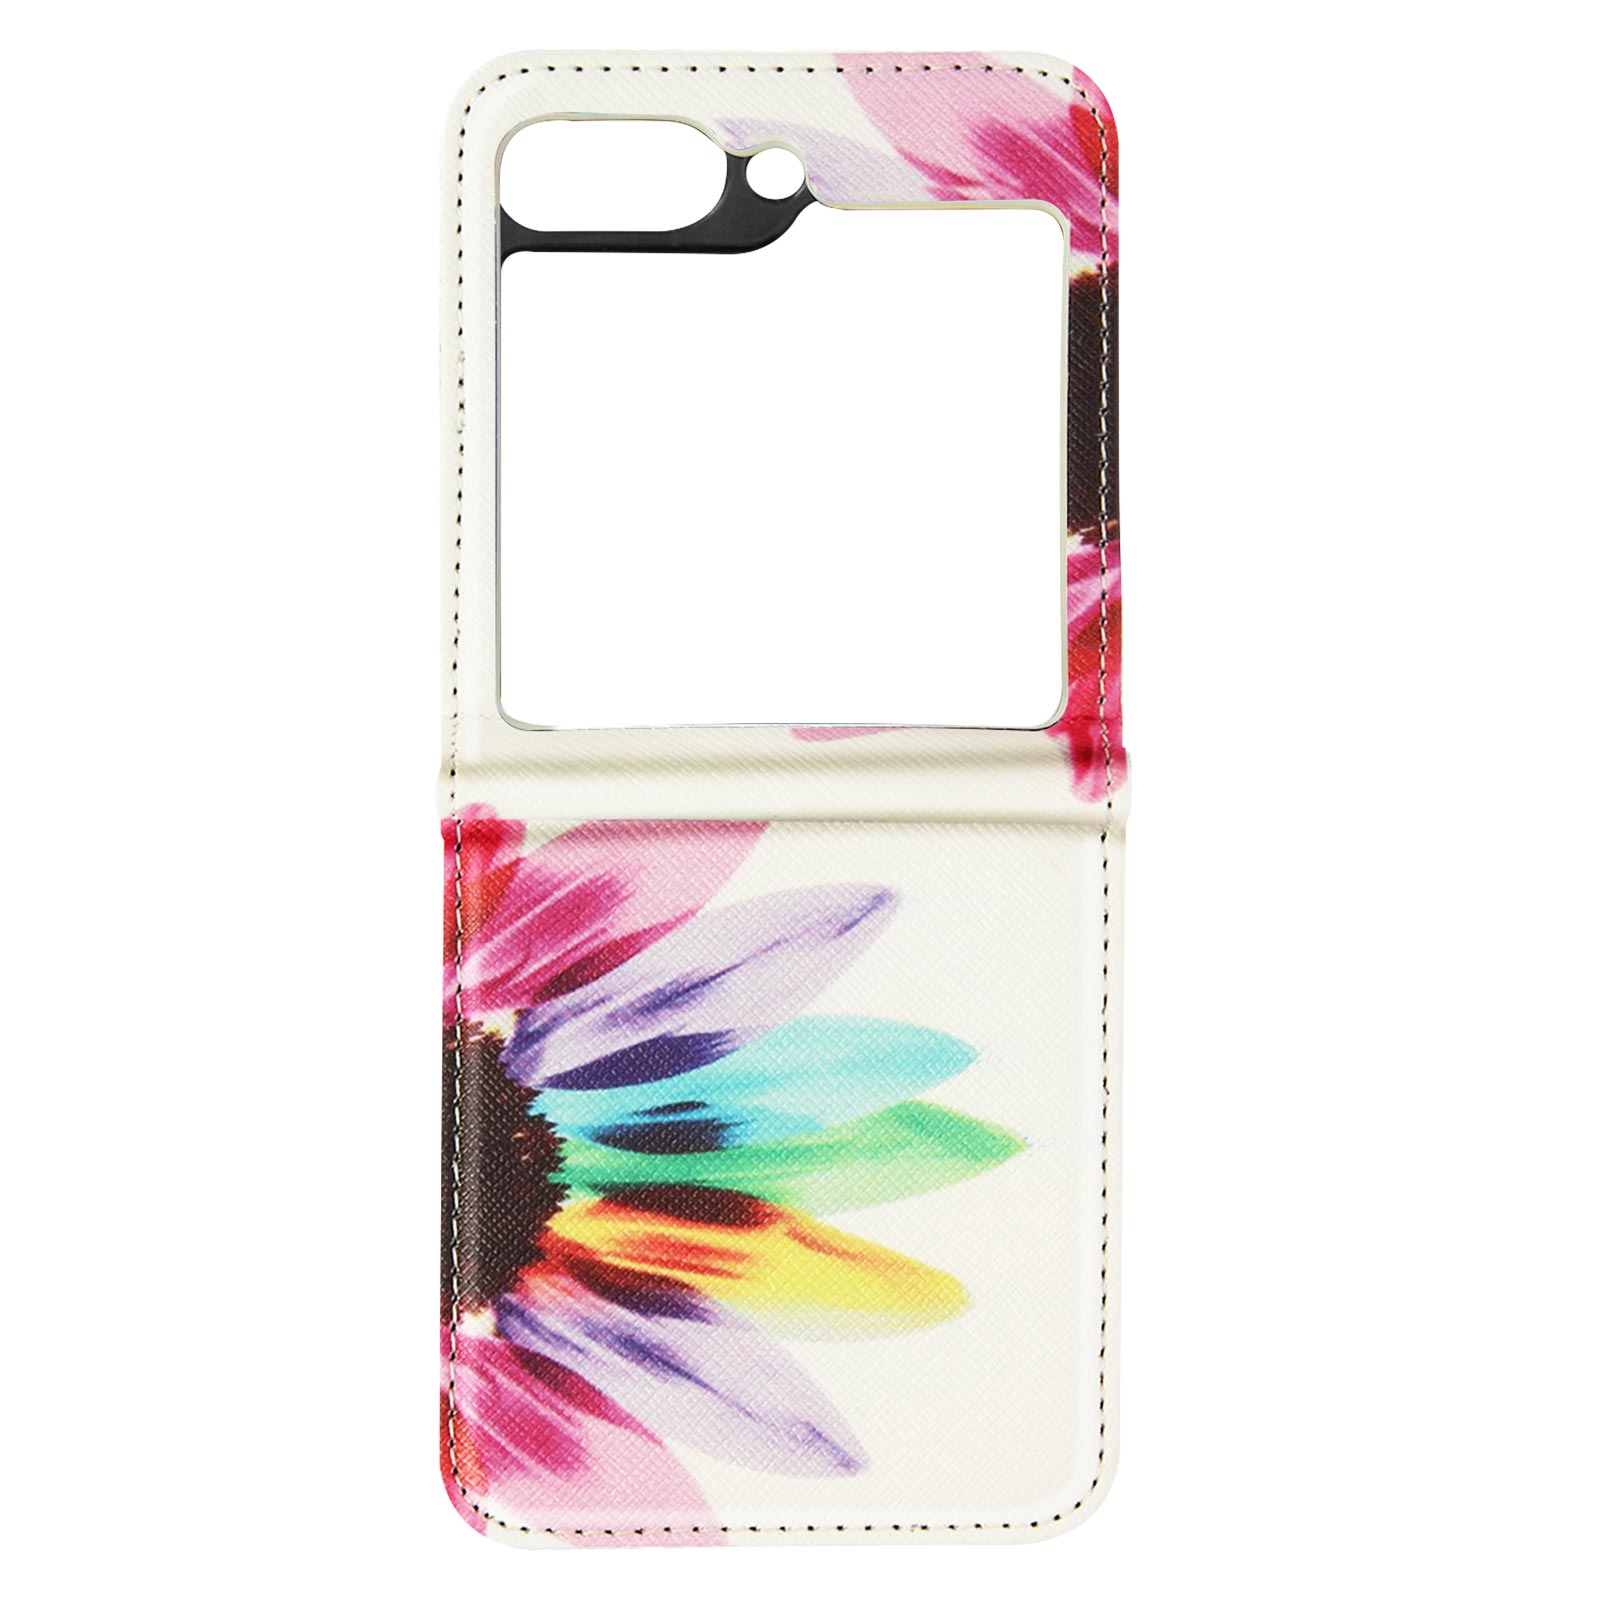 Sun AVIZAR 5, Z Flip Bunt Samsung, Galaxy Backcover, Flower Kunstlederhülle Series,